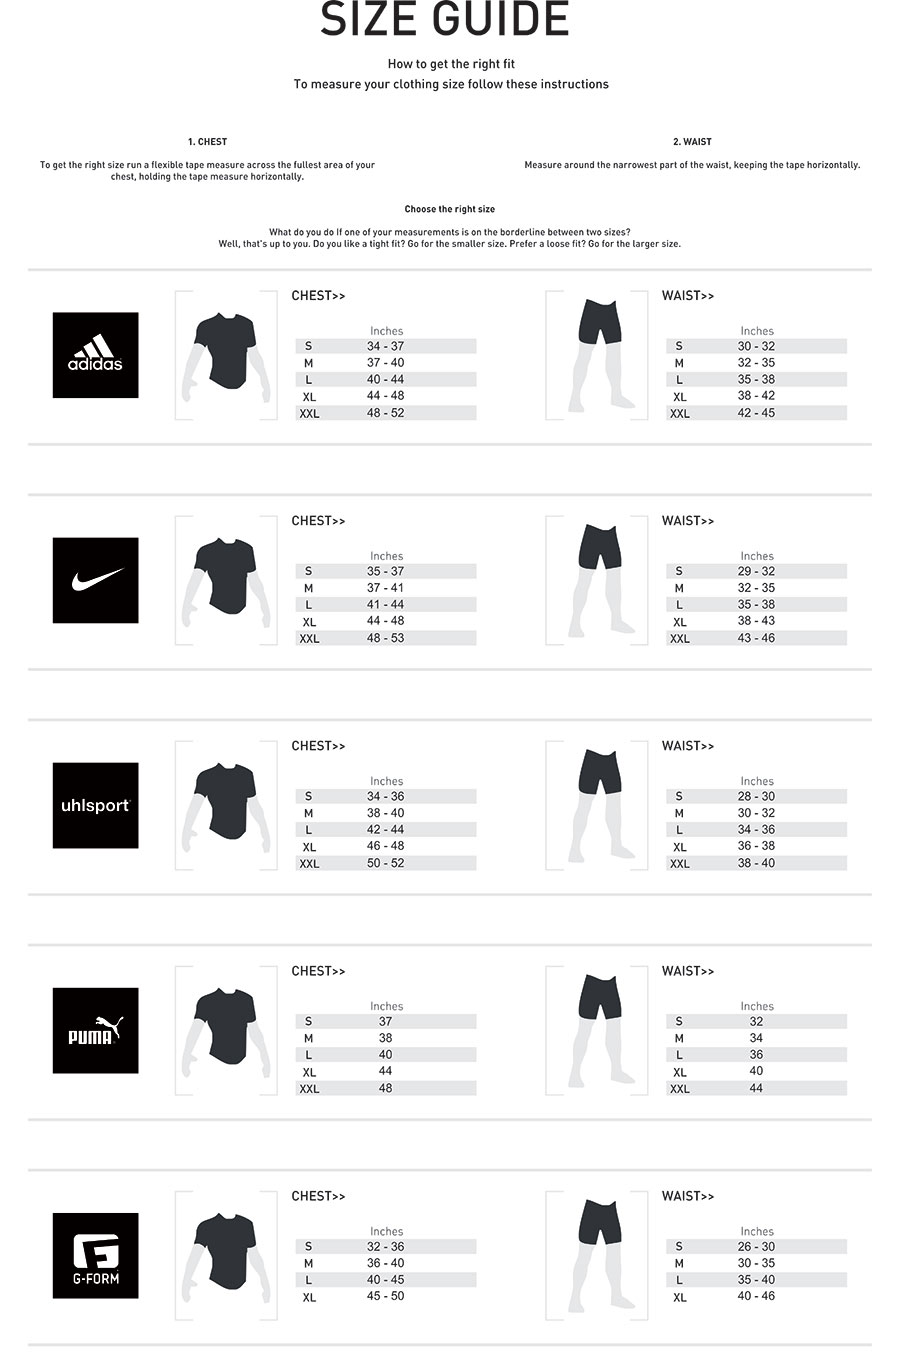 adidas clothing size chart